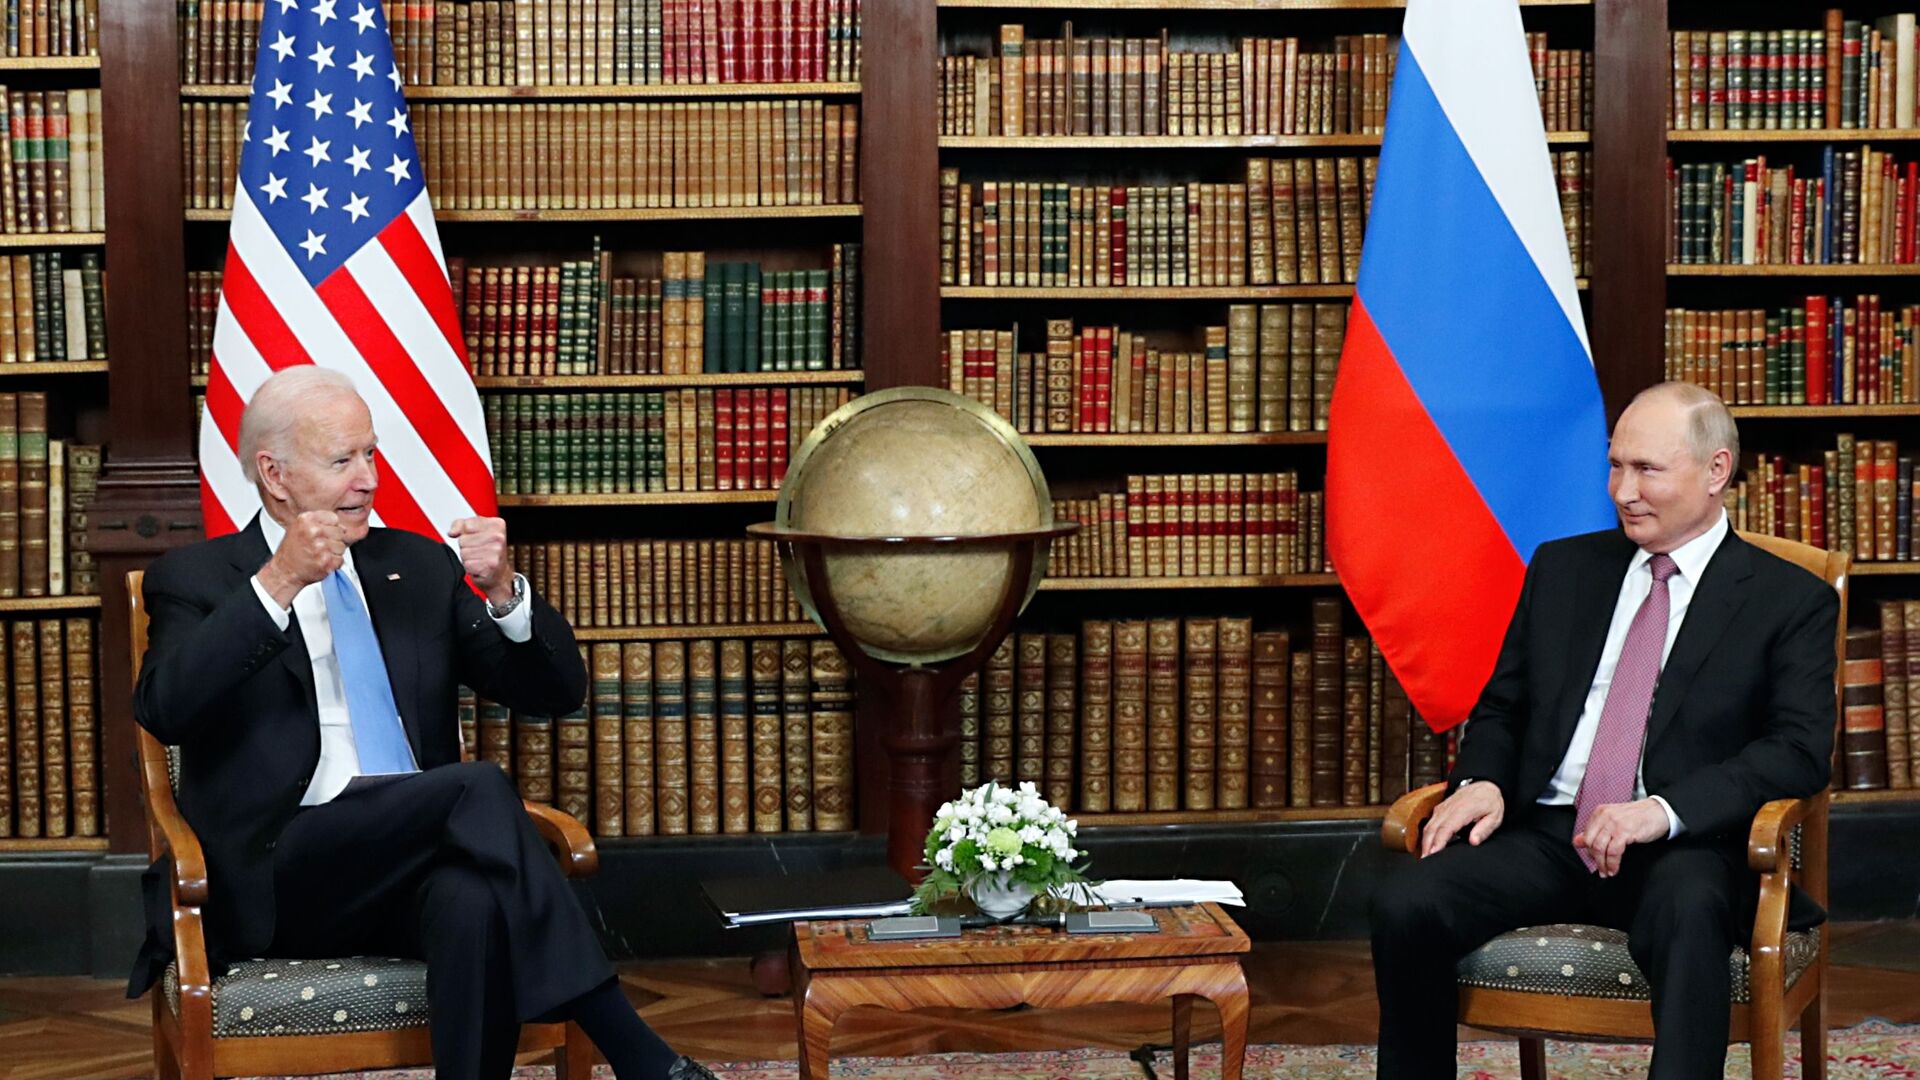 16 يونيو/ حزيران 2021 - صورة تجمع الرئيس الروسي  فلاديمير بوتين والرئيس الأمريكي جو بايدن في  فيلا لا غرانج في جنيف السويسرية. - سبوتنيك عربي, 1920, 07.12.2021